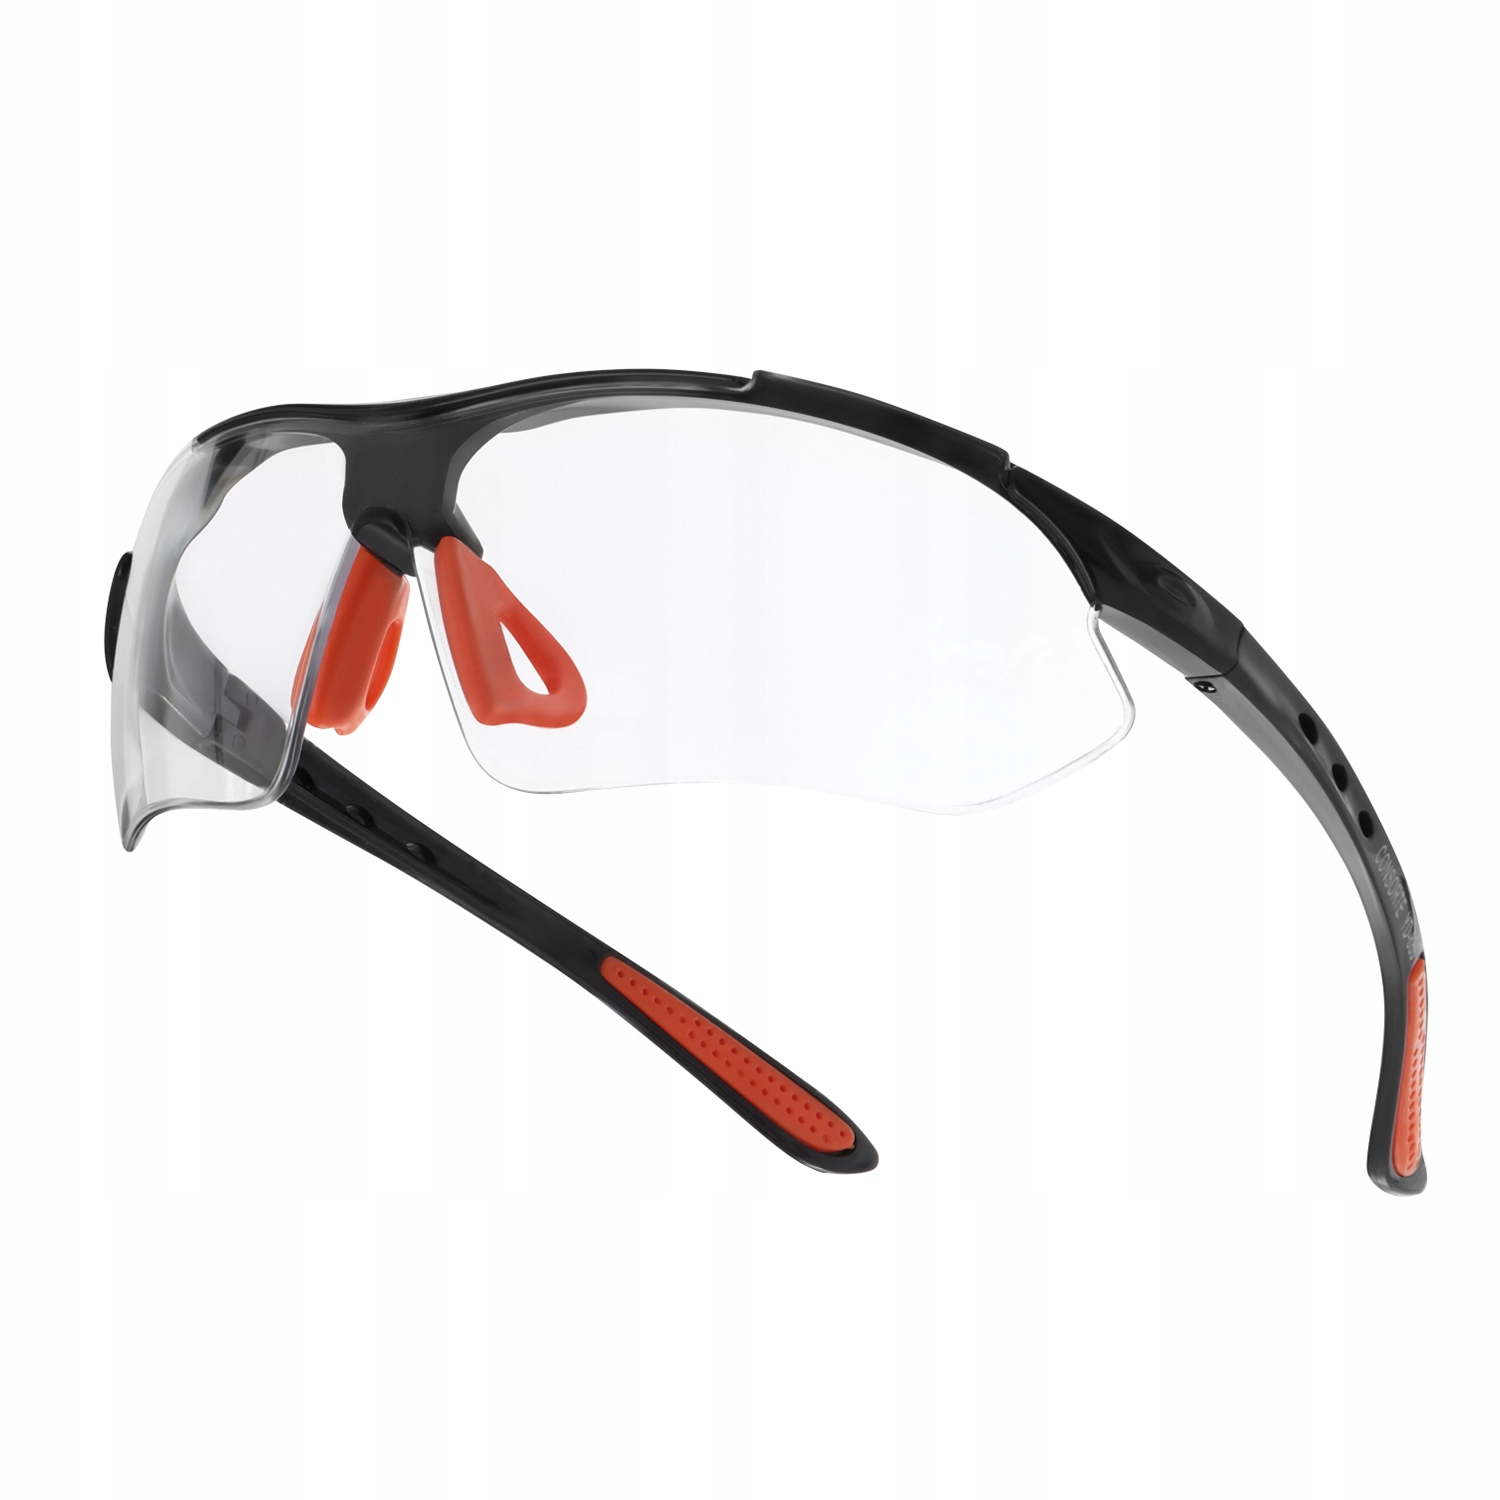 ЛЕГКИЕ и ПРОЧНЫЕ защитные очки бесцветные на велосипед